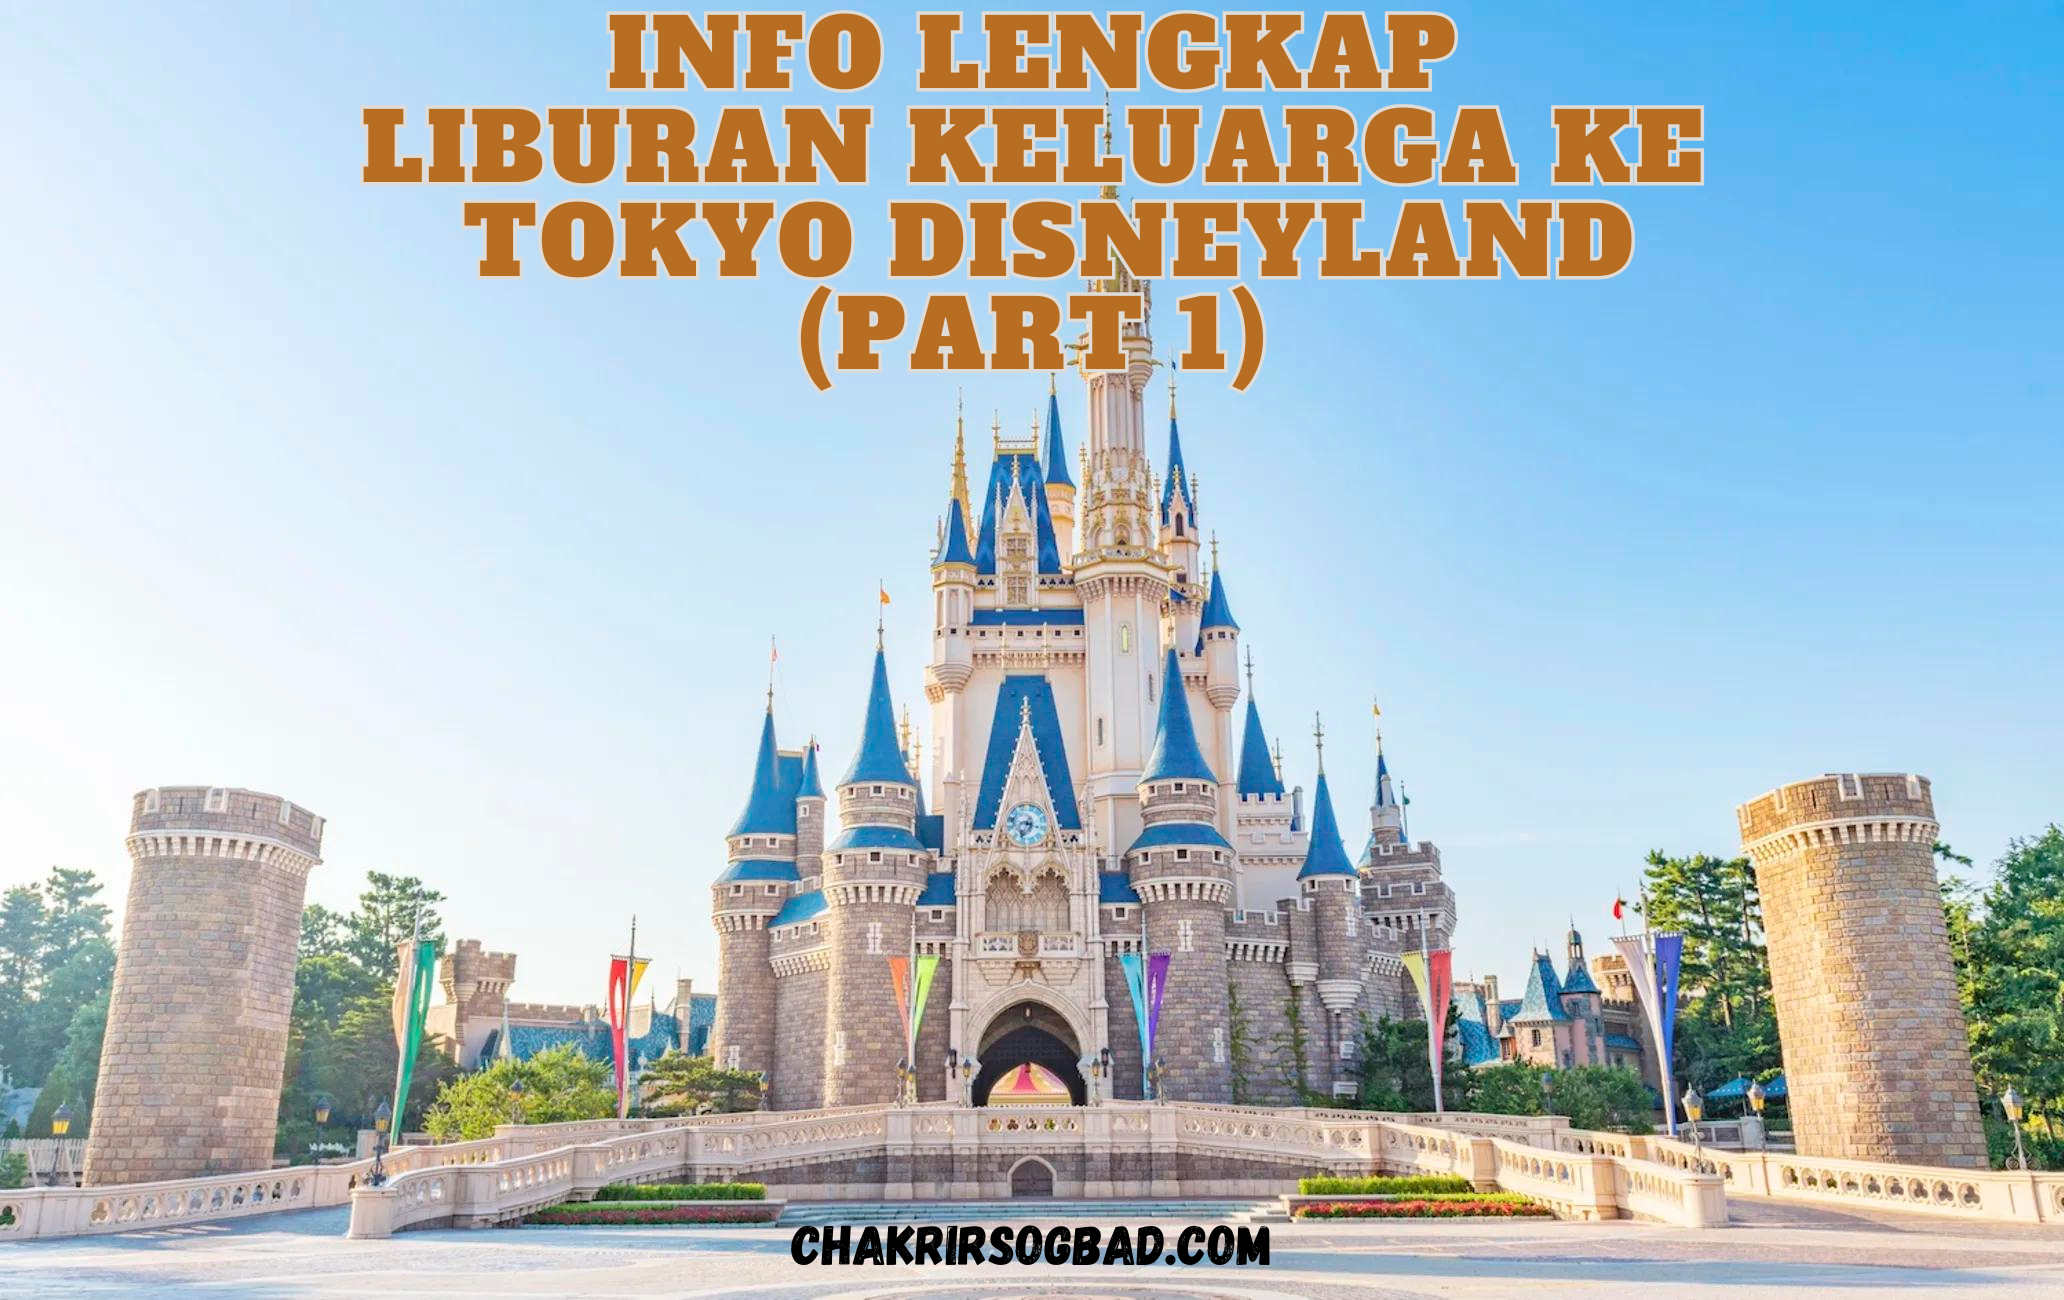 Info Lengkap Liburan Keluarga ke Tokyo Disneyland (Part 1)